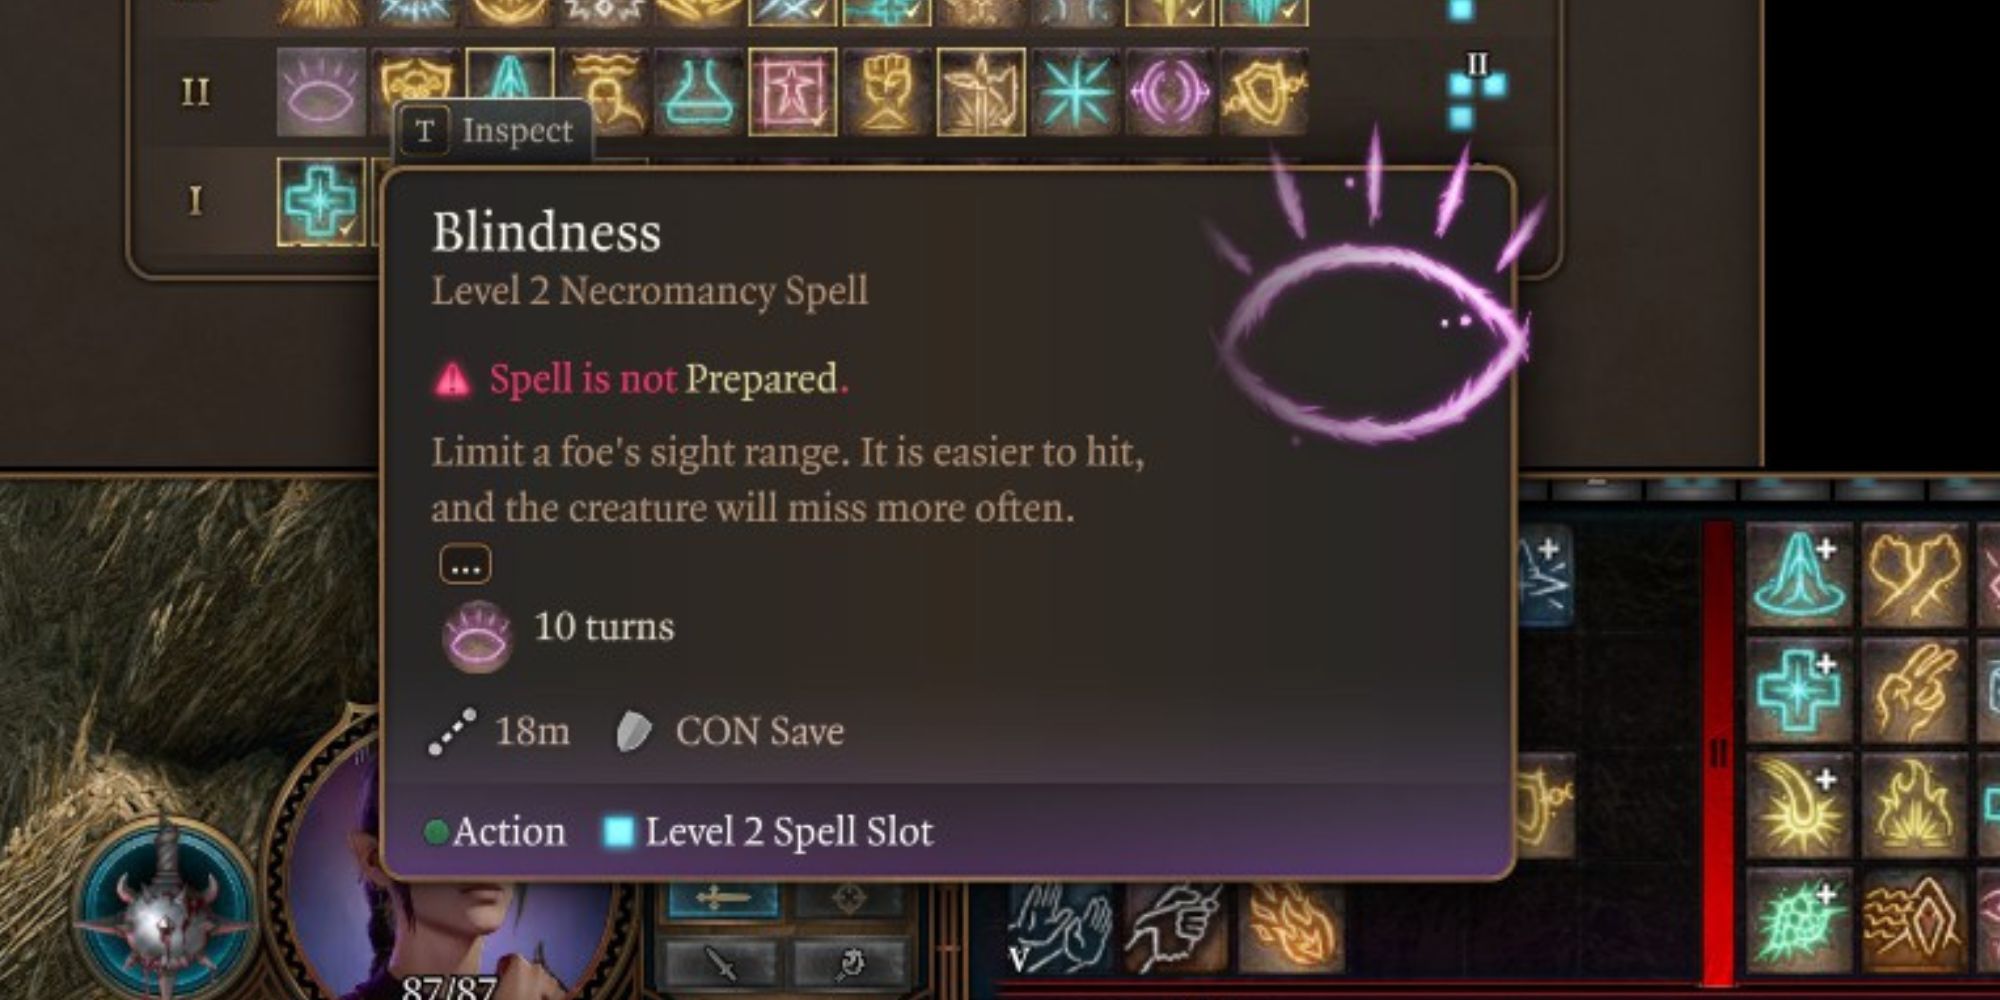 Blindness spell in Baldur's Gate 3